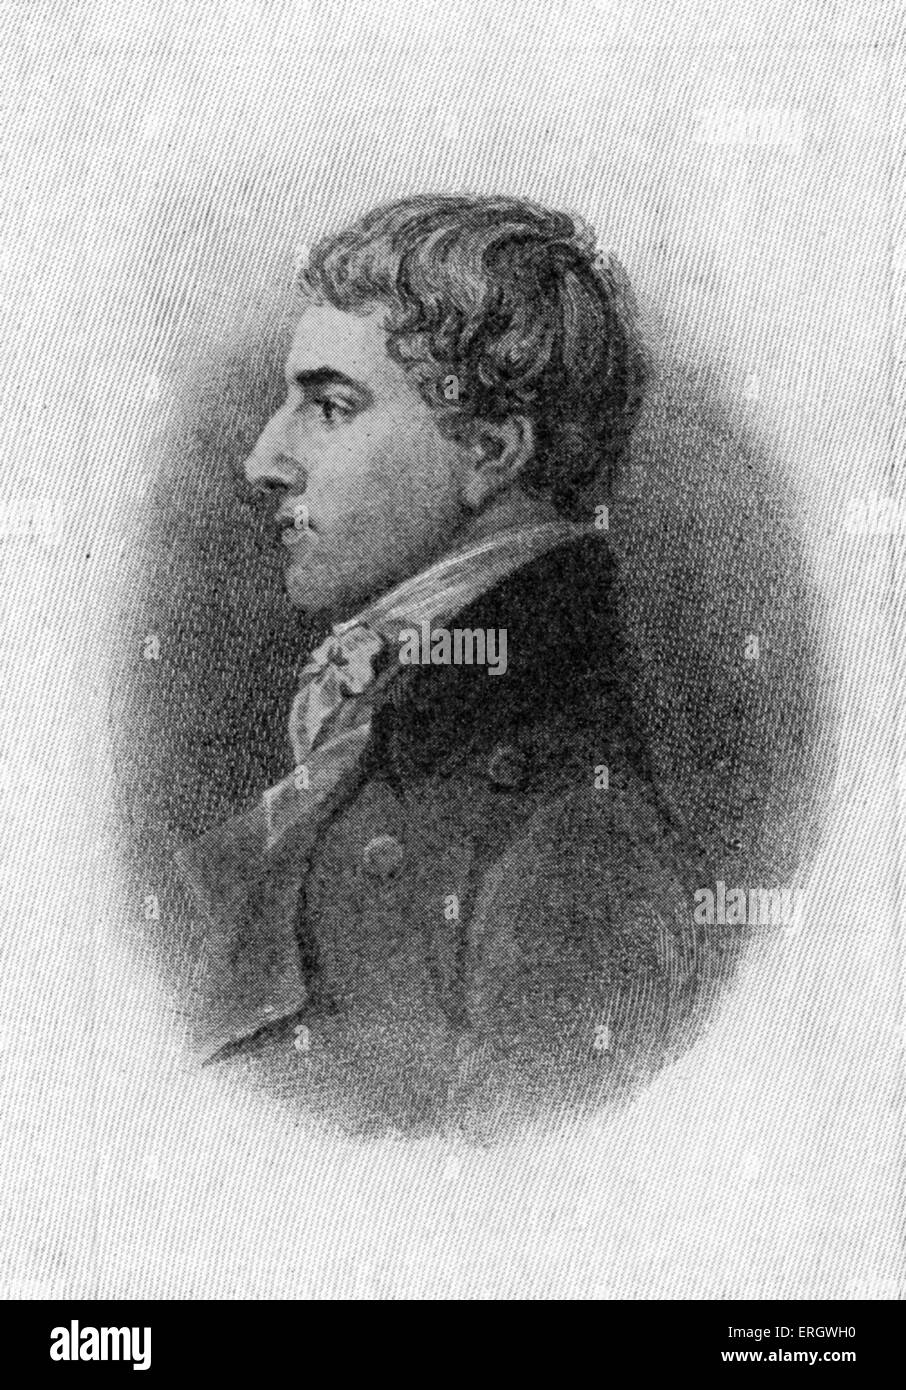 Charles Lamb: Englischer Schriftsteller, 10. Februar 1775 – 27. Dezember 1834.  Nach dem Portrait von Robert Hancock. Stockfoto